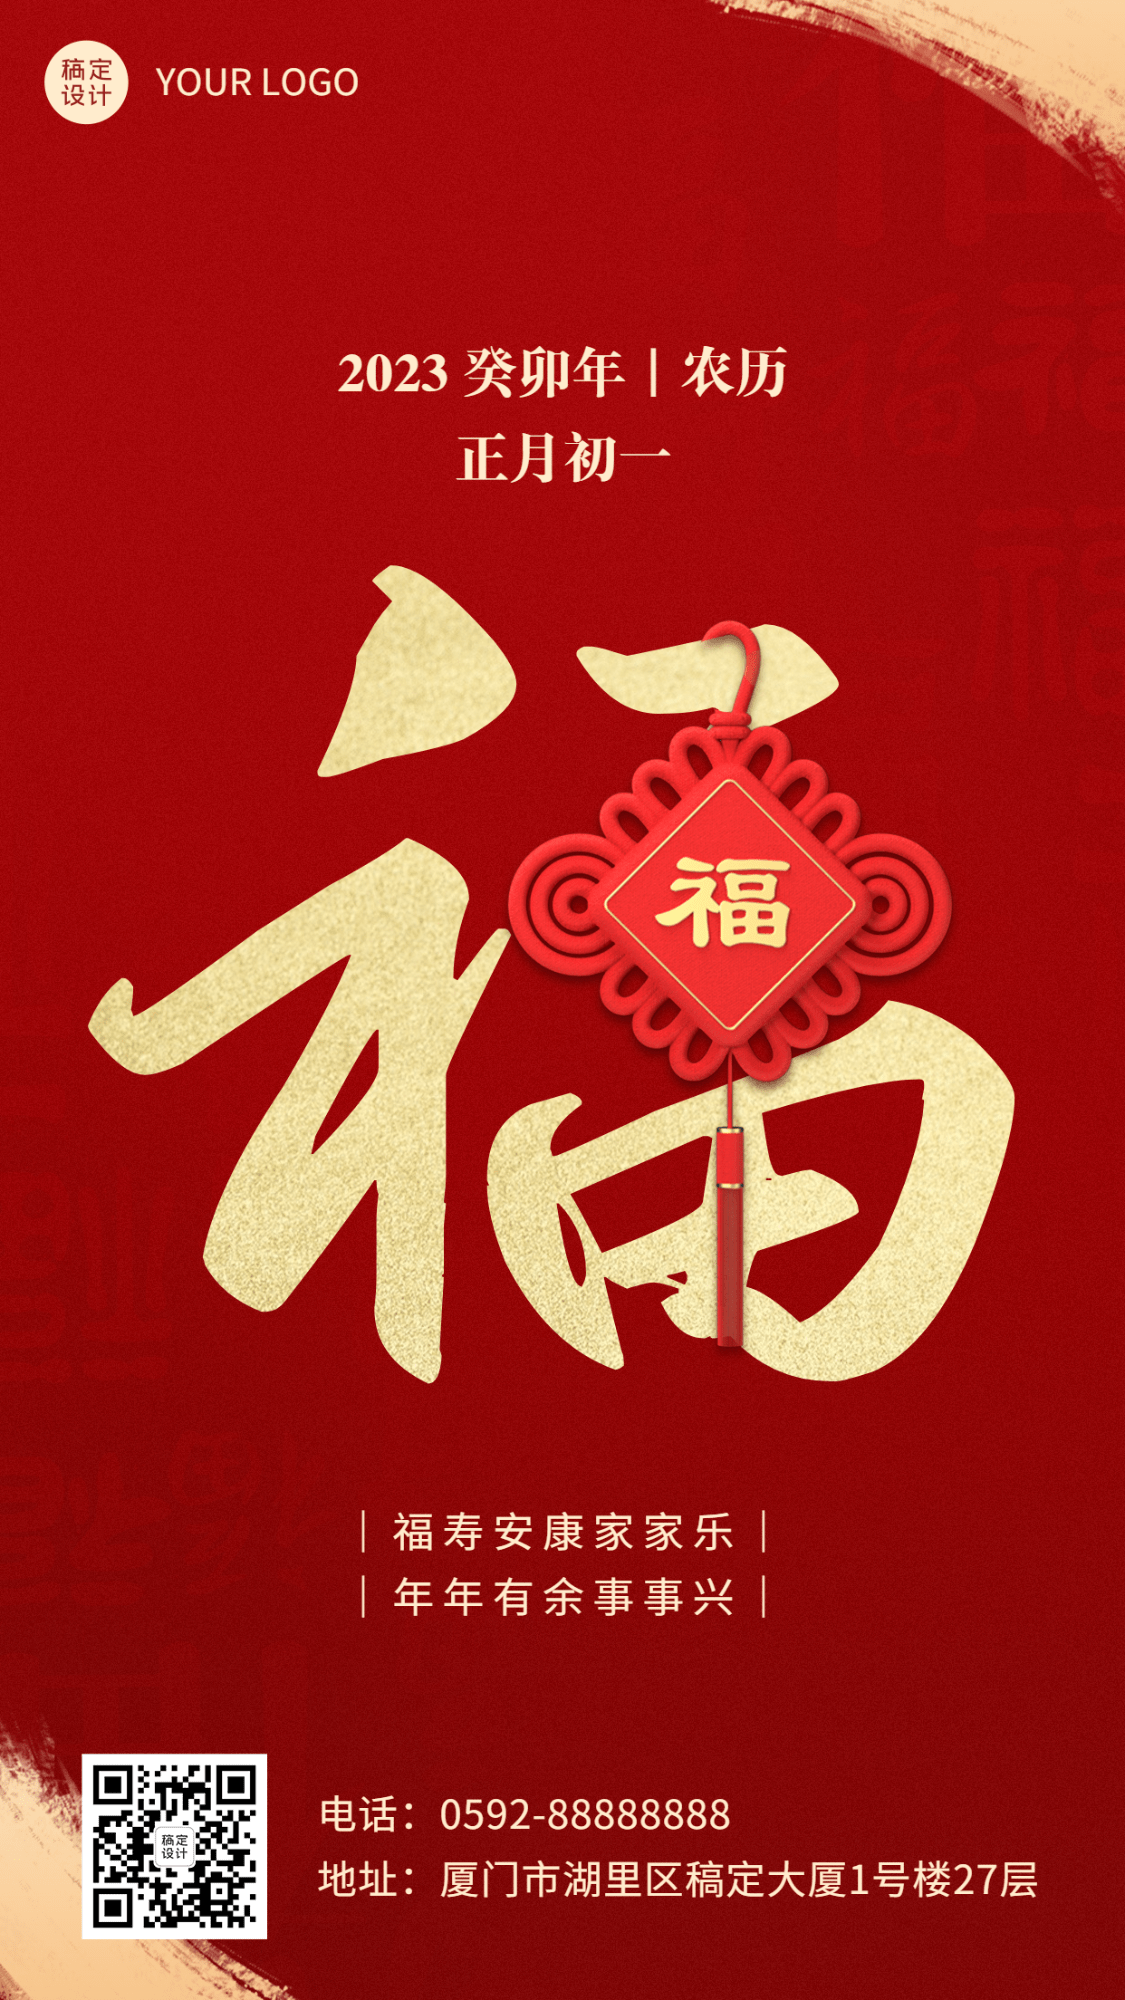 企业春节祝福新年祝福兔年大吉贺卡海报_图片模板素材-稿定设计